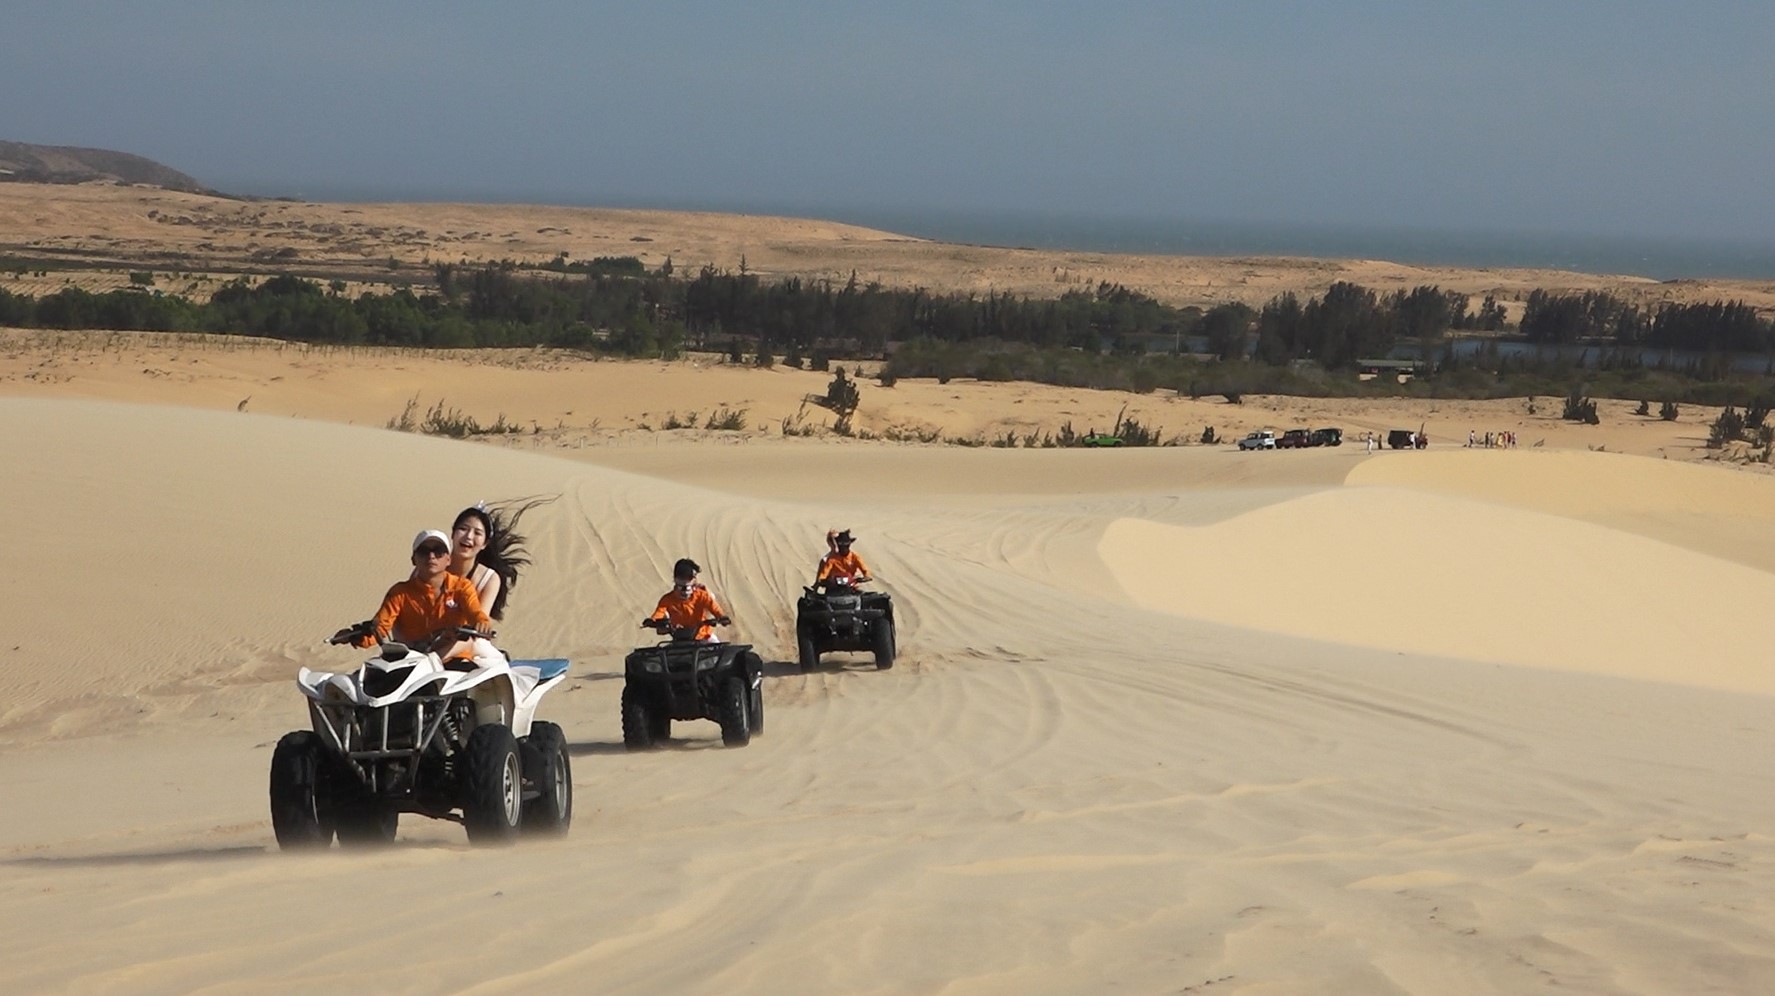 Xe môtô địa hình (ATV) chạy trên đồi cát không bị lún. Để an toàn thì có tài xế của đơn vị cho thuê xe sẽ lái chở du khách. Du khách cũng có thể tự lái nếu đủ can đảm.